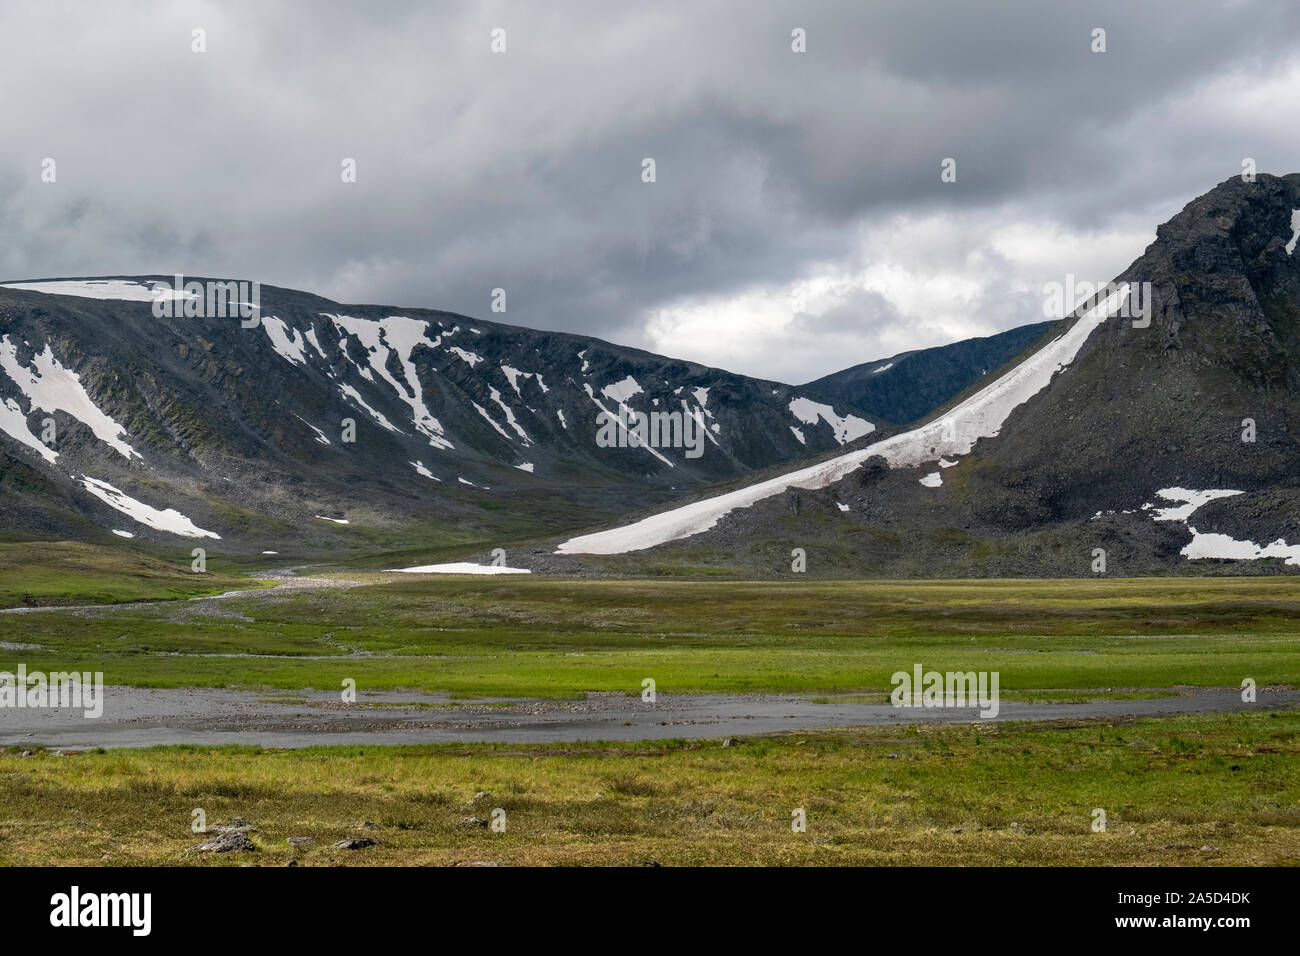 La neve copre parzialmente le colline sulla tundra in Siberia, Russia Foto Stock